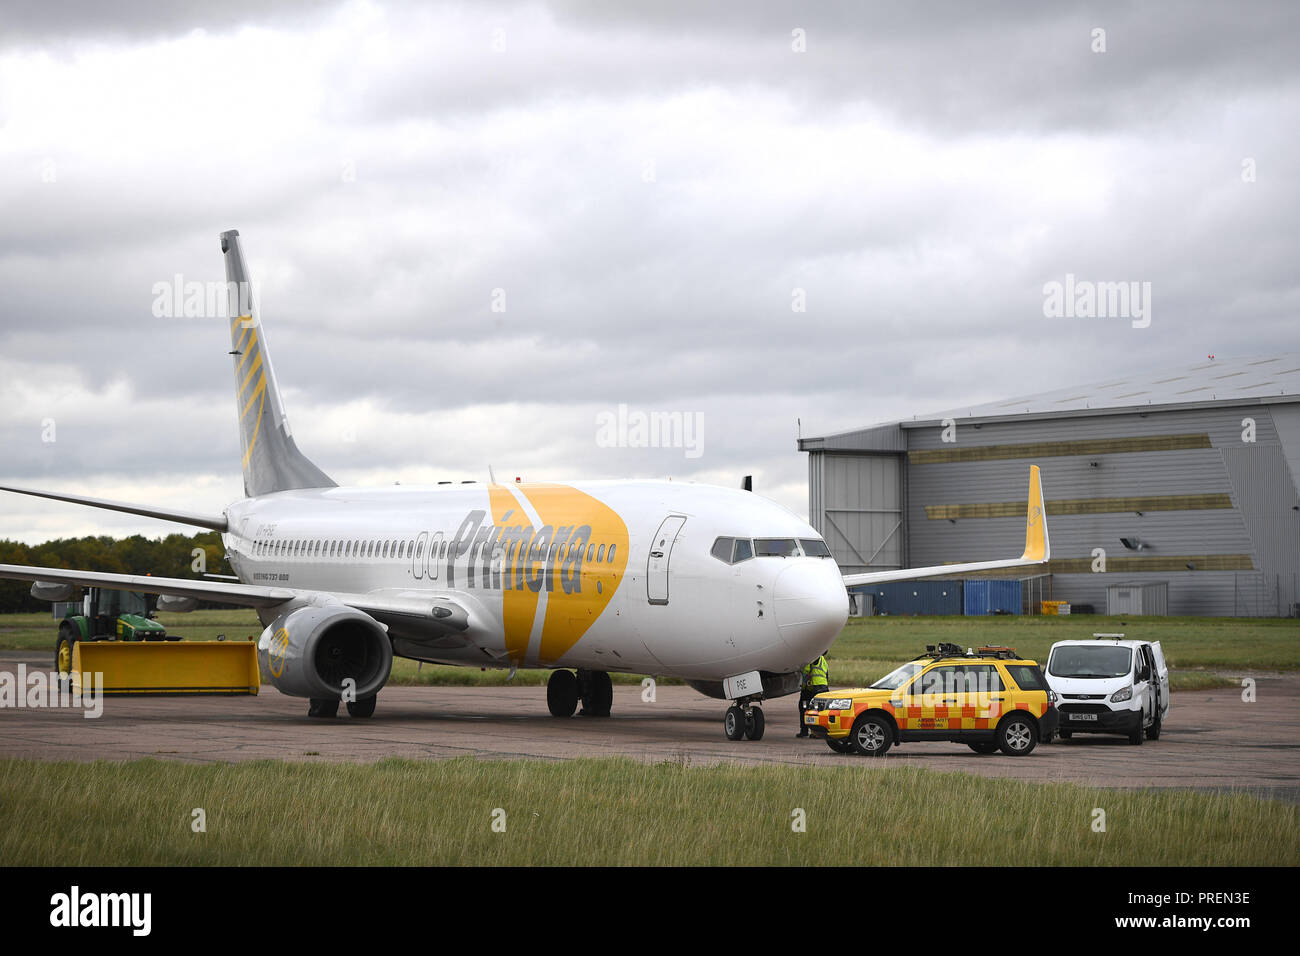 Un avion à l'aéroport de Stansted Primera, la compagnie aérienne discount danois a cessé ses activités avant de pourvoir à la faillite et les passagers ont été avertis de ne pas mettre en place pour les vols. Banque D'Images